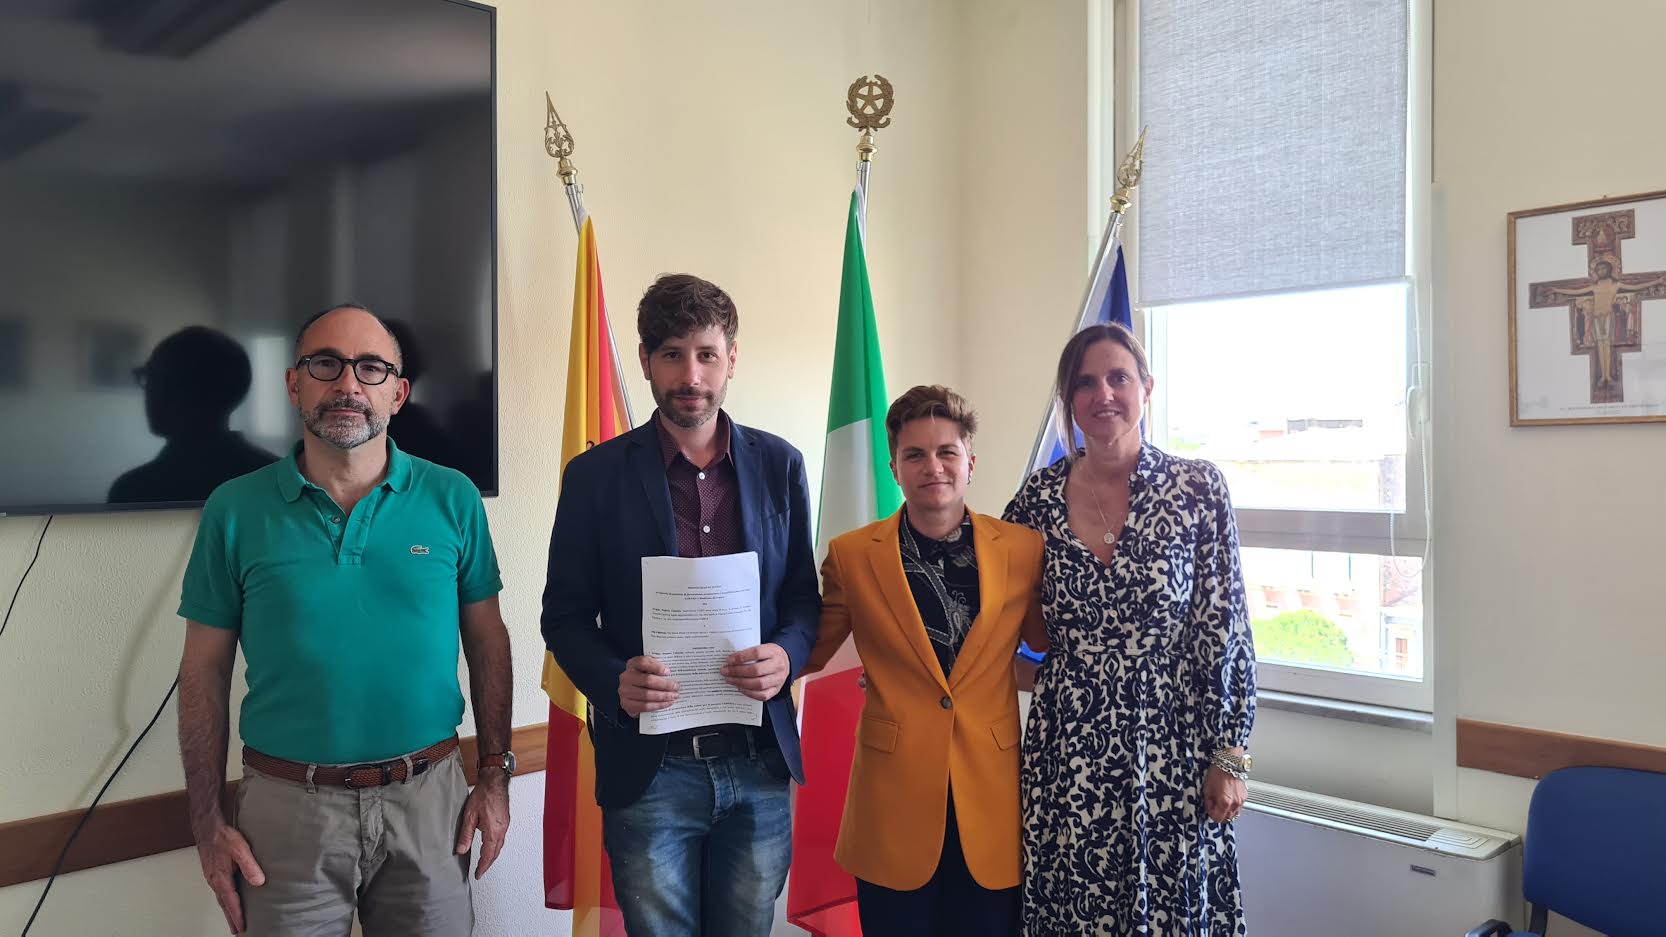 L’Asp di Catania contro l’omofobia: siglata collaborazione con Arcigay per prevenire ogni discriminazione